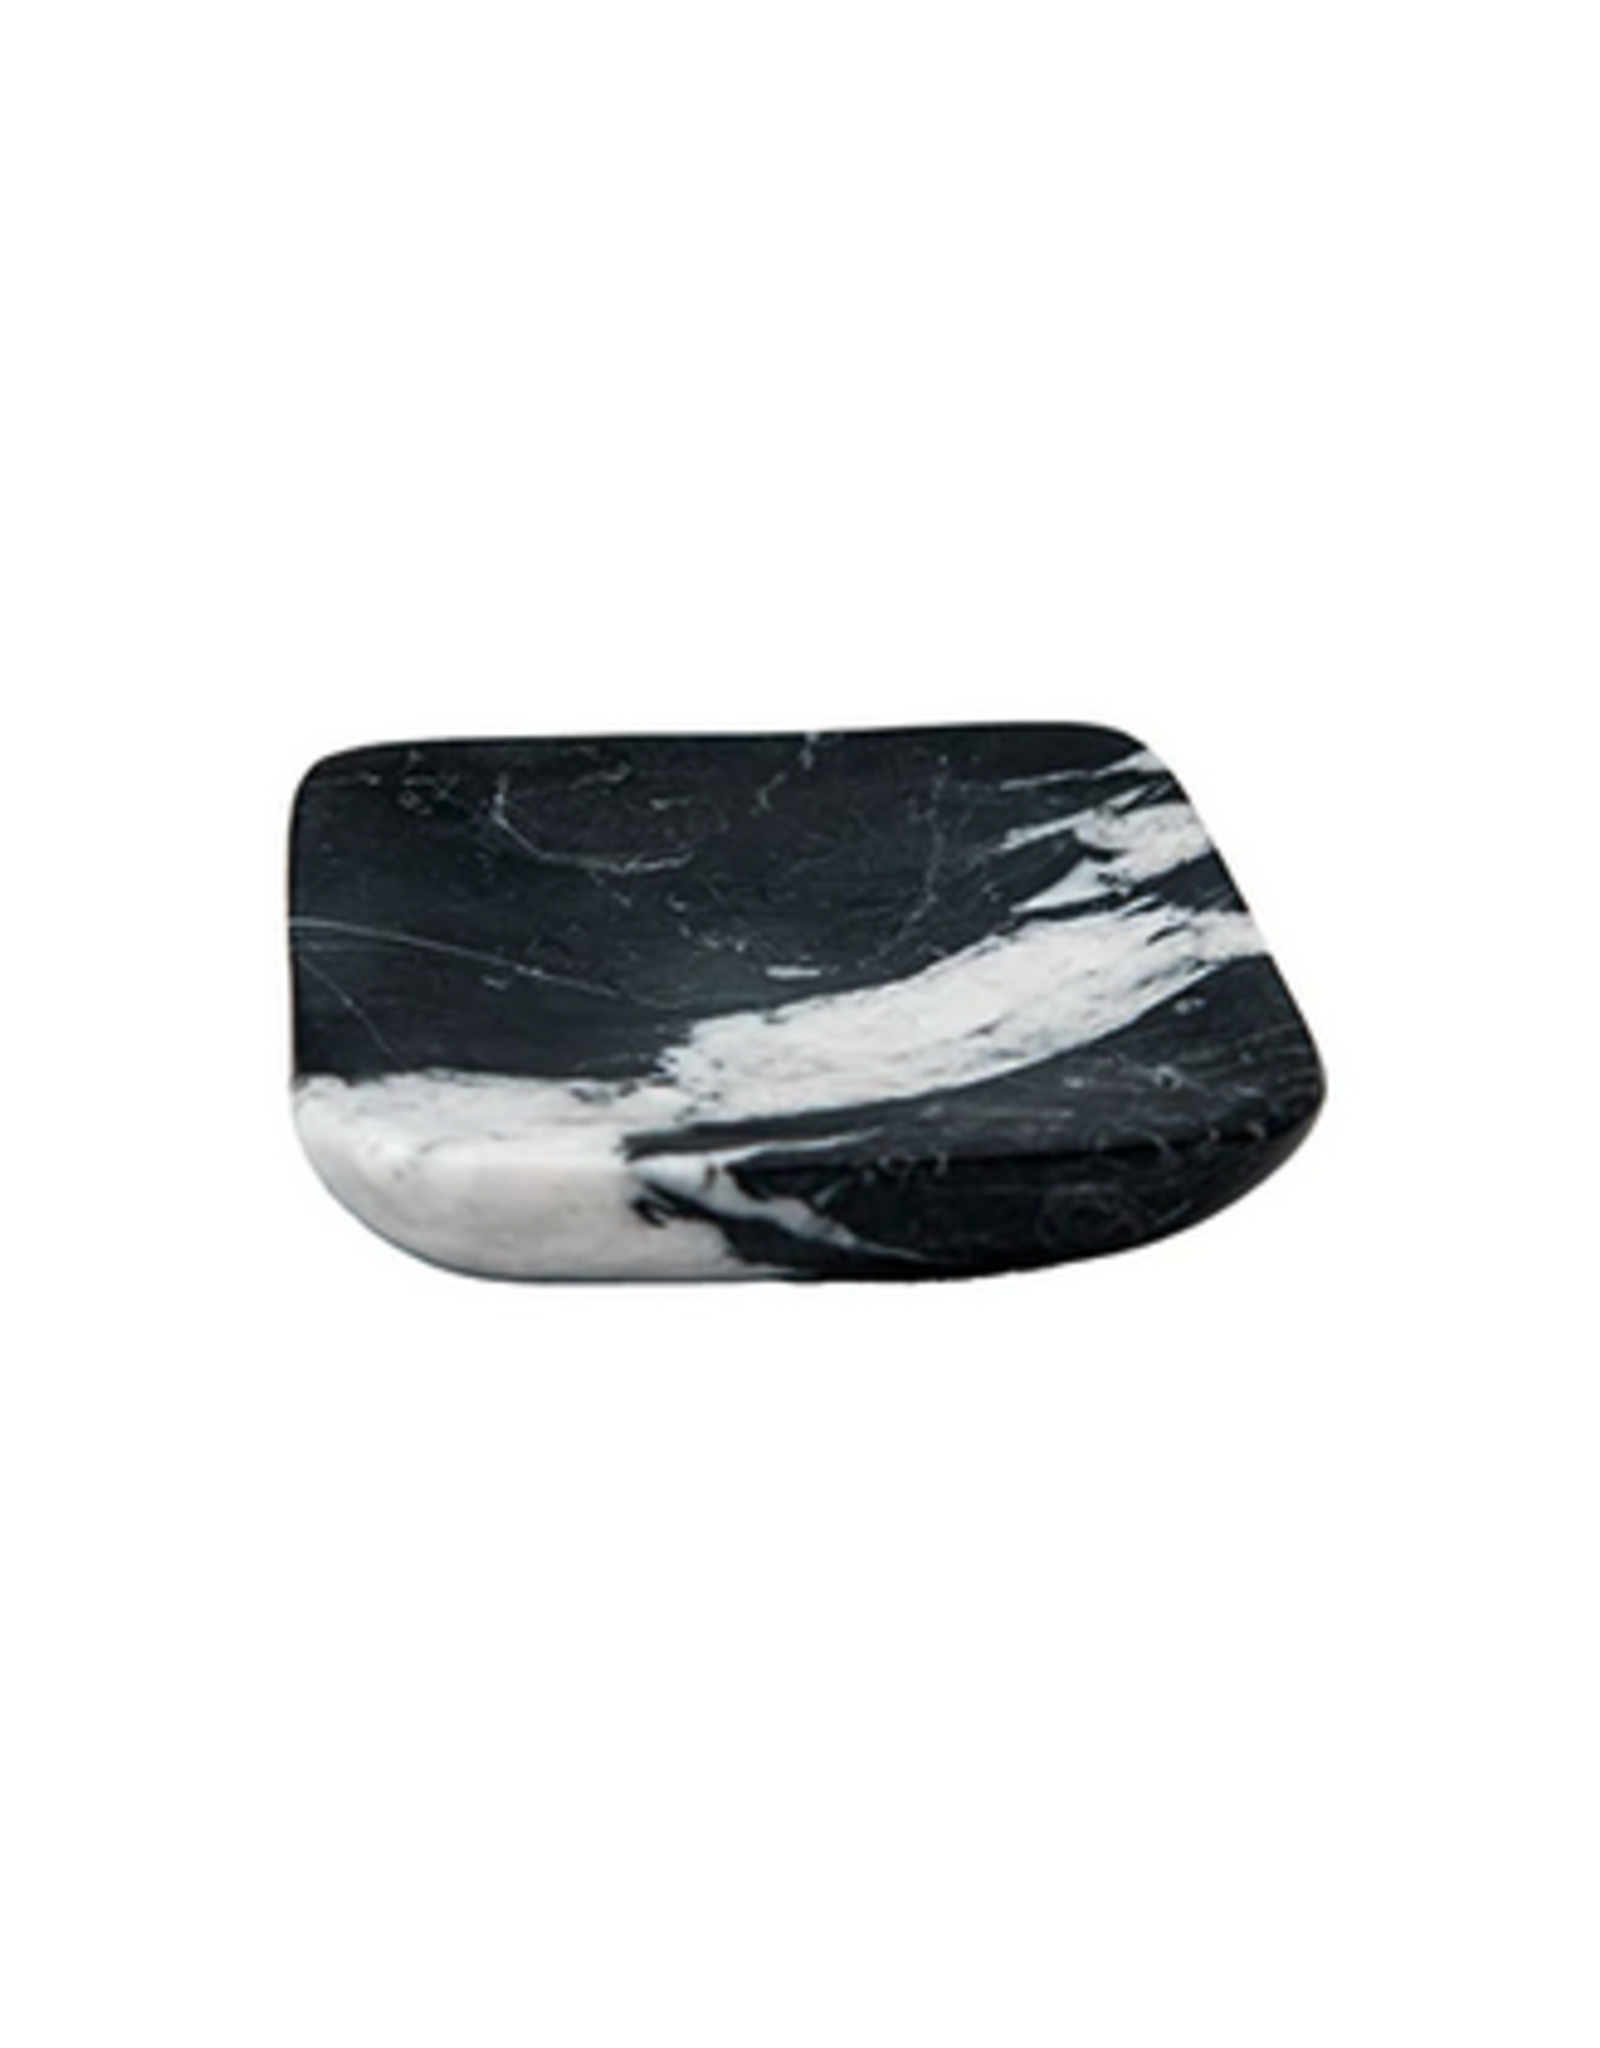 Square Black Marble Soap Dish L3.5"